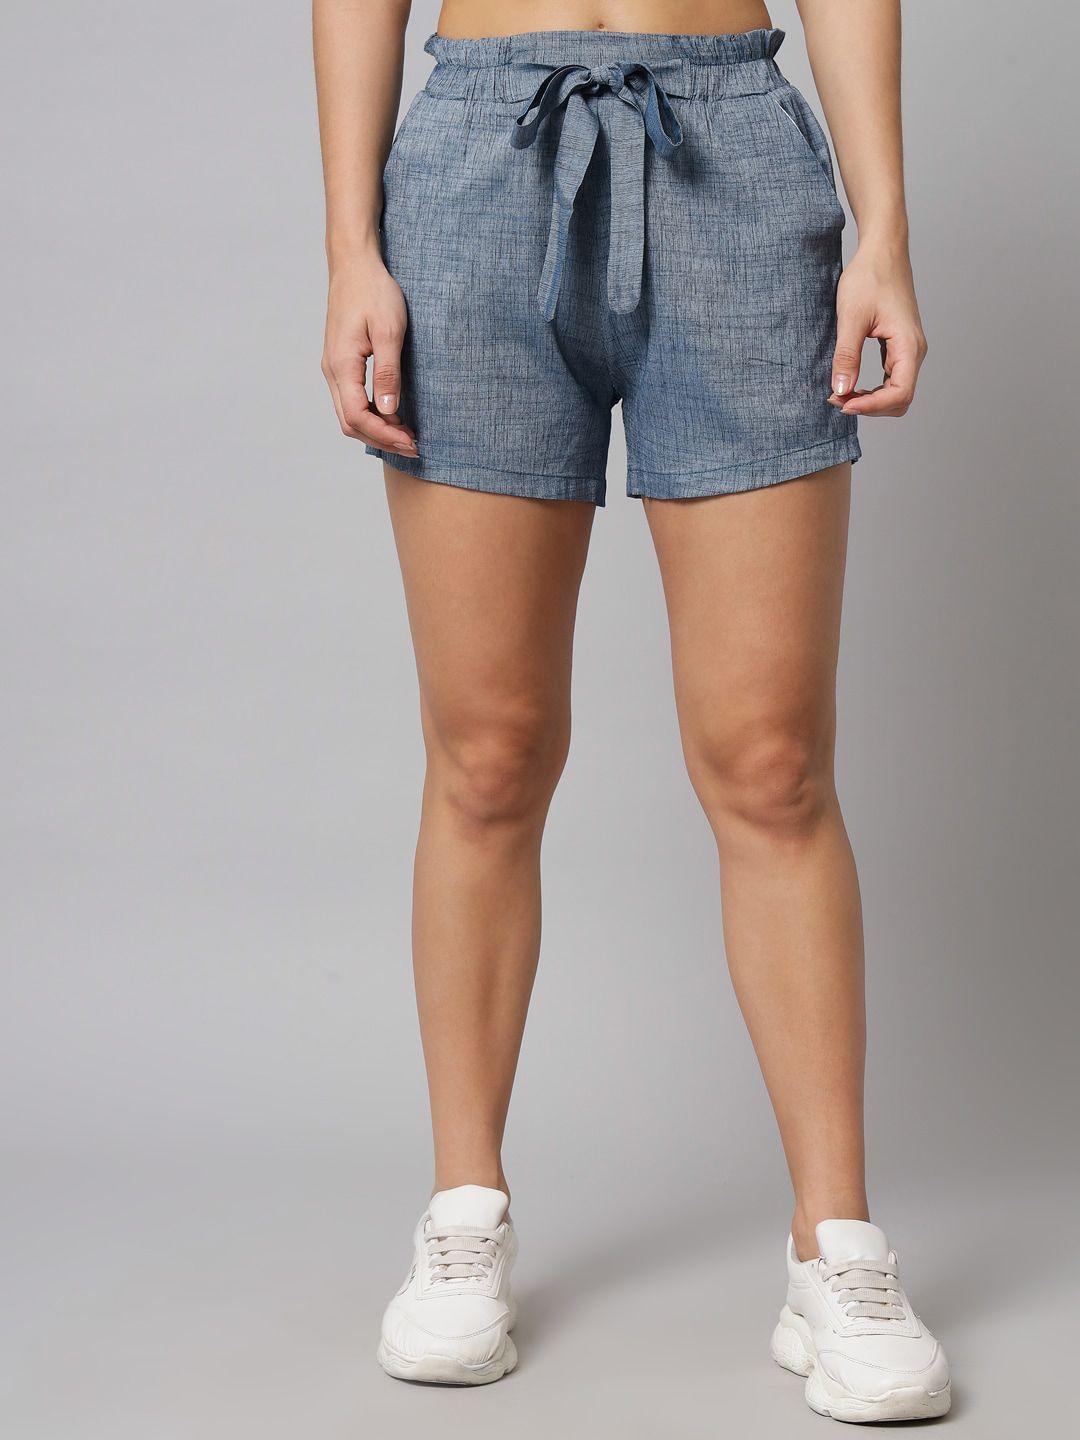 guti-women-high-rise-outdoor-shorts